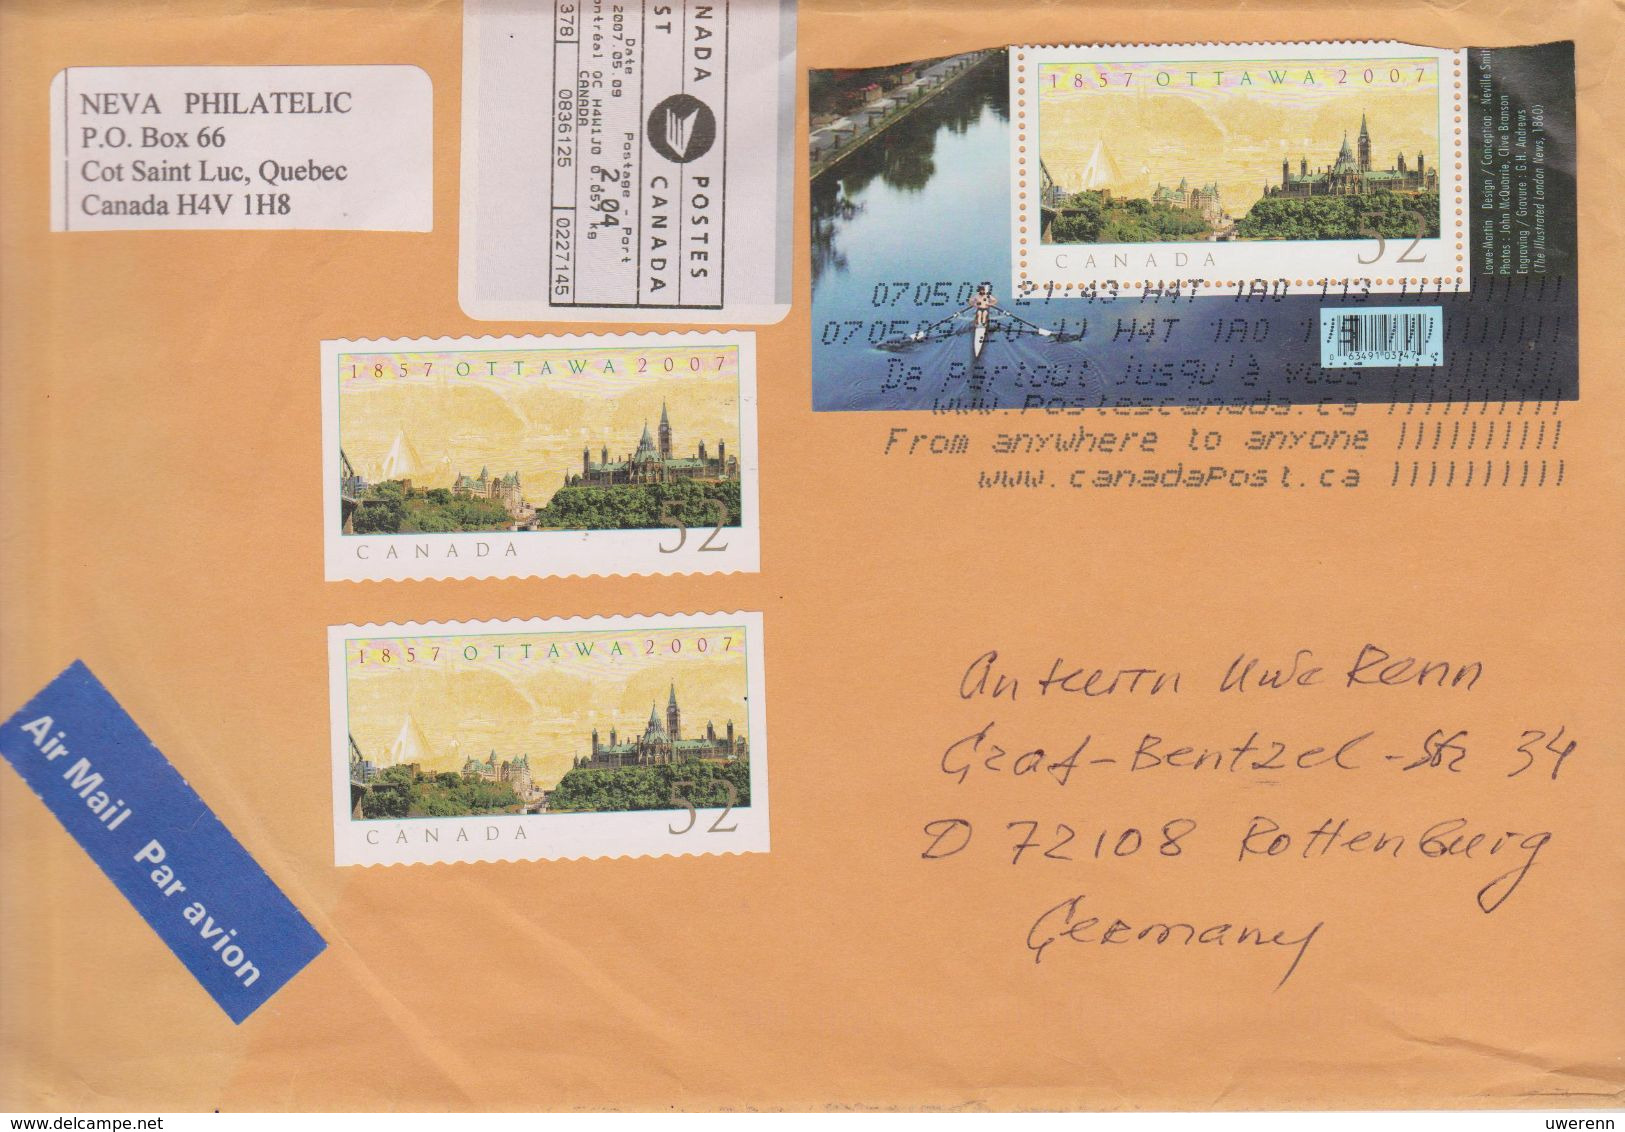 Kanada 2009. Brief Aus Cote-Saint-Luc, Quebec Nach Deutschland, Stempel Posteigenwerbung "From Anywhere ..." - Postal History